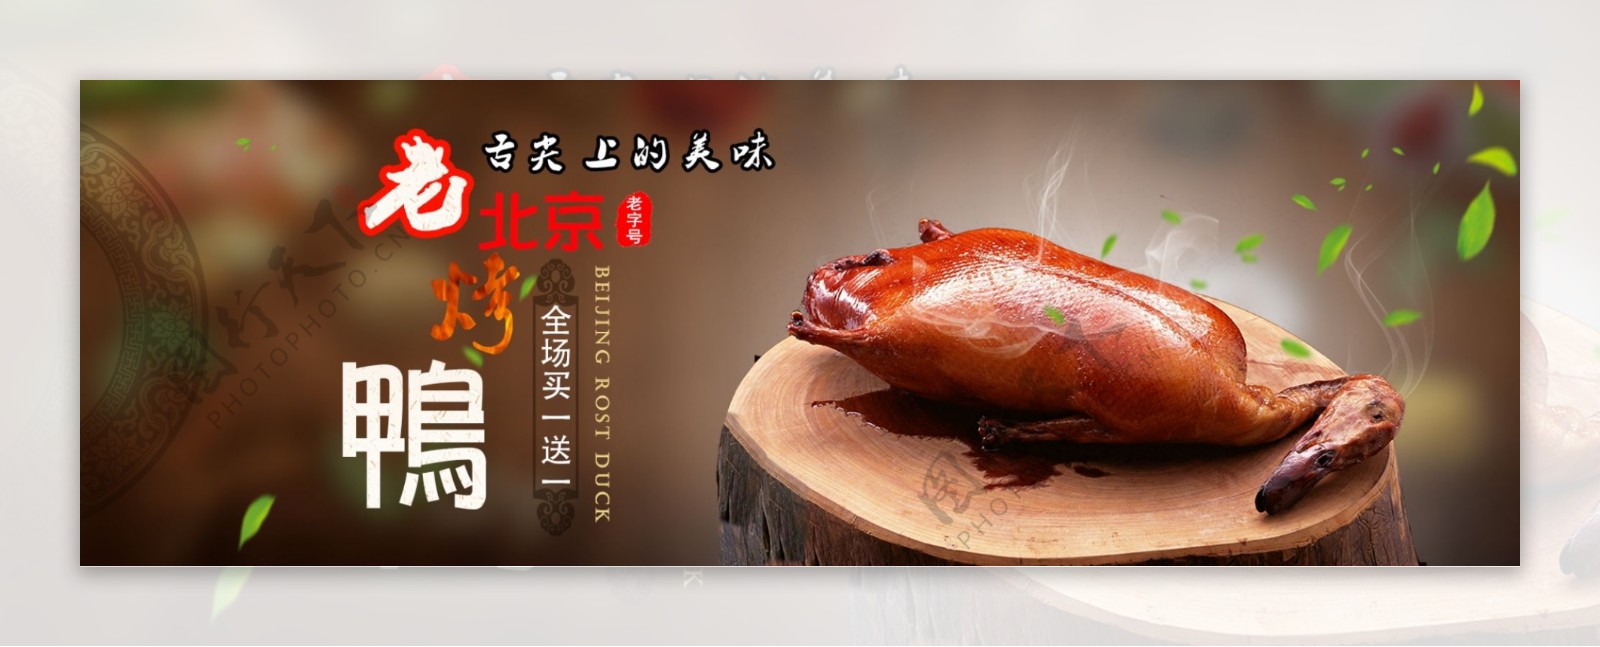 老北京烤鸭淘宝海报